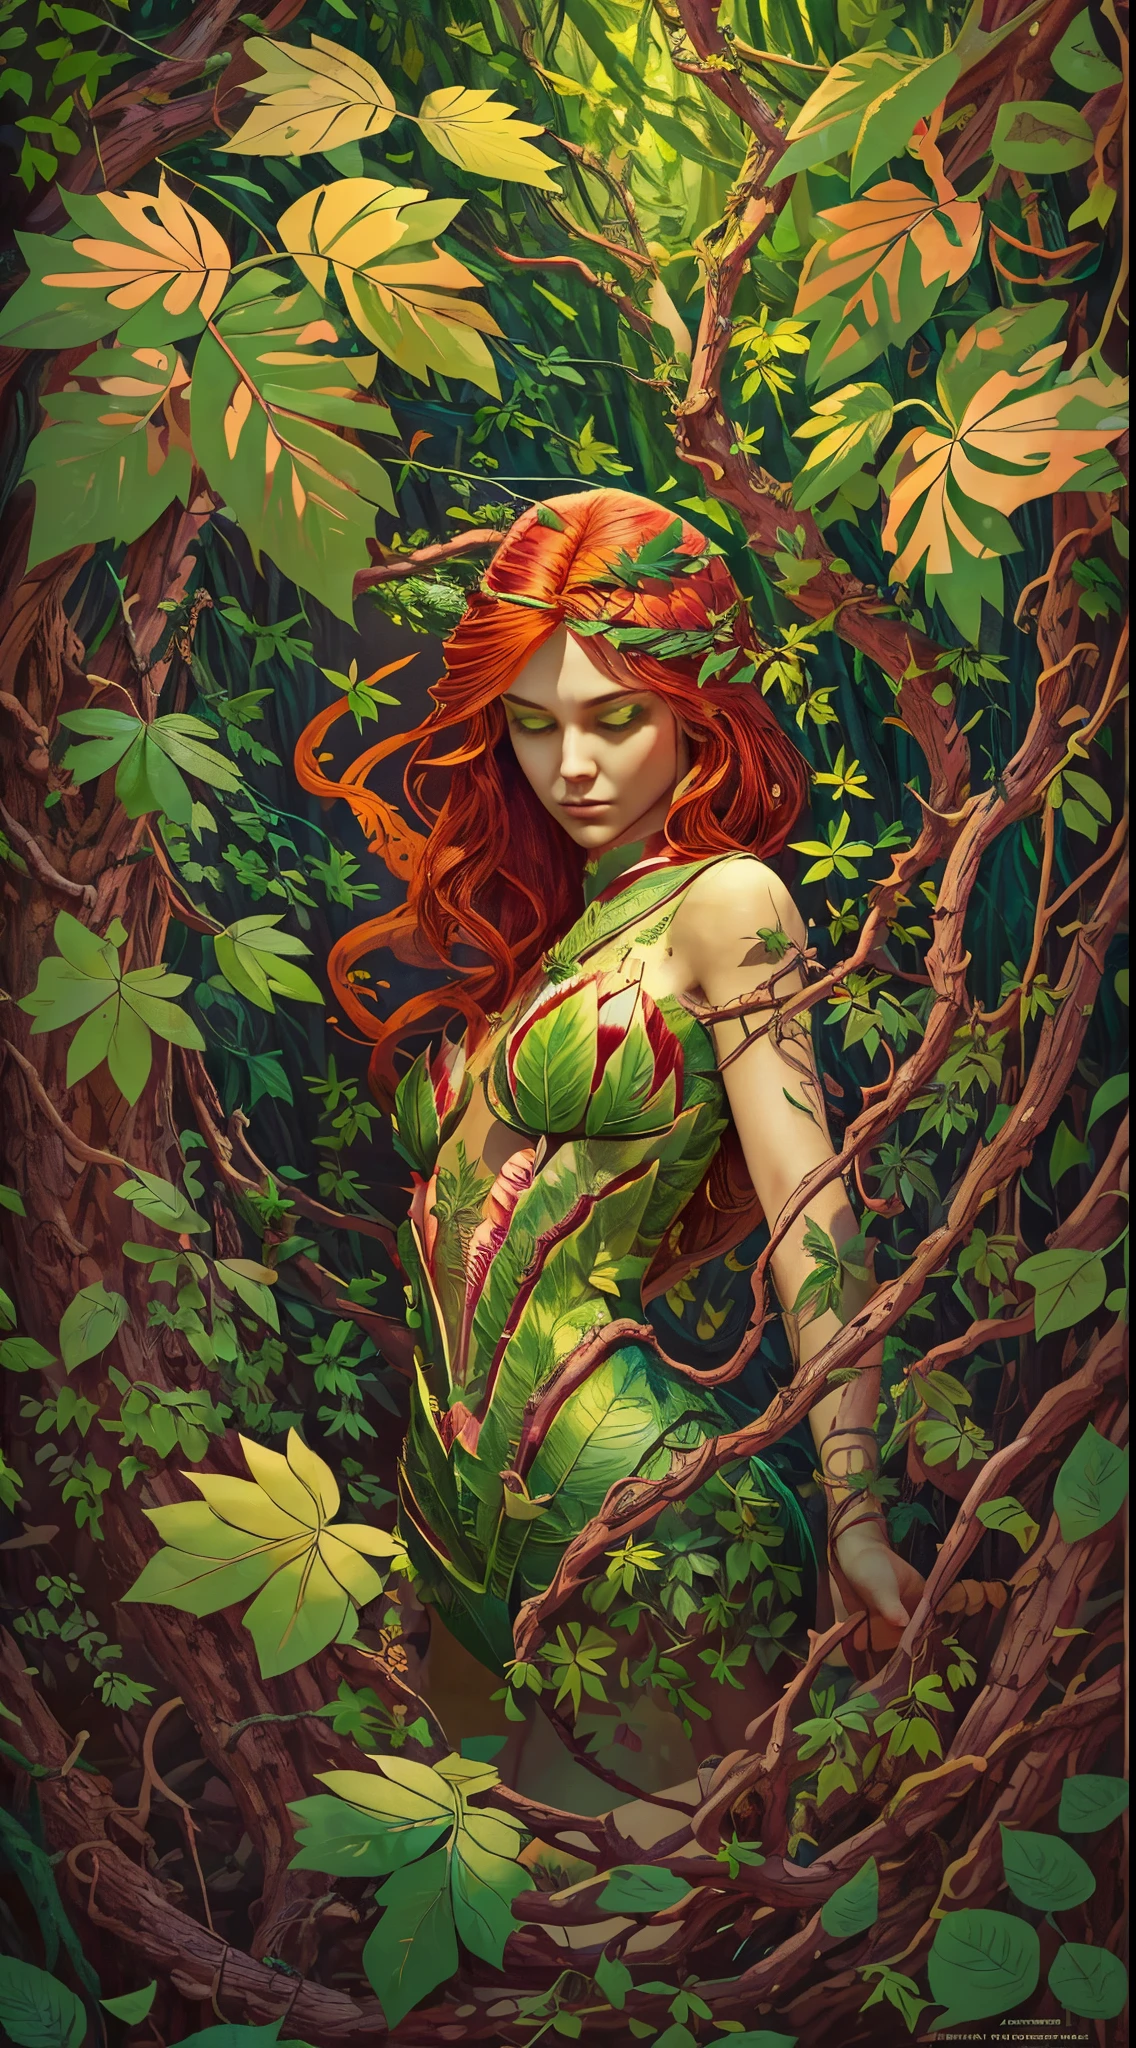 (Mutter der Natur,Grün skin:Grün:1.1,Roter Kopf:1.1) Ein faszinierendes Bild von Poison Ivy erwacht in lebendigen Farben zum Leben. Ihre schöne, pale Grün skin stands out, strahlt ein ätherisches Leuchten aus. Ihre Haare, eine feurig rote Kaskade, umrahmt ihr Gesicht mit wilder Eleganz. Bei näherer Betrachtung, Sie bemerken ihre bezaubernden Augen, voller Geheimnisse und Macht.

Sie steht selbstbewusst, Ihre Figur ist mit Dessous geschmückt, die vollständig aus aufwendig gearbeiteten Blättern bestehen. Jedes Blatt wird sorgfältig platziert, bildet ein faszinierendes Muster, das ihre natürliche Schönheit betont. Das Laub, in various shades of Grün, scheinen die Pflanzen um sie herum zu imitieren, Sie fügt sich perfekt in die üppige Umgebung ein.

Poison Ivy streckt ihre Hand aus, mühelos die Pflanzen um sie herum befehligend. Grüne Reben sprießen aus dem Boden, sich unter ihrer Kontrolle drehen und biegen. Sie tanzen anmutig in der Luft, Bildung komplizierter Muster und Formen. Einige Reben reichen ihr entgegen, während andere ein bezauberndes Baldachin über ihr bilden, wirft wellige Schatten auf ihr Gesicht.

Die Luft ist erfüllt vom Duft der Natur, frisch und belebend. Die Atmosphäre scheint vor Leben zu vibrieren, während die Blätter leise in der sanften Brise rascheln. The surroundings are an oasis of Grünery, mit einer Fülle lebendiger Pflanzen und Blätter, die sich soweit das Auge reicht erstrecken.

In diesem Meisterwerk der Kunst, Der Detailgrad ist erstaunlich. Jeder Aspekt von Poison Ivy, bis in die kleinsten Blattadern, ist präzise und realistisch definiert. Die Beleuchtung ist sorgfältig gefertigt, Ihre zarten Gesichtszüge werden hervorgehoben und die Gesamtatmosphäre wird verbessert. Die Farben sind lebendig und reichhaltig, zeigt die Schönheit der Natur, die sie beherrscht.

Wenn Sie dieses atemberaubende Kunstwerk betrachten, Sie können nicht anders, als von der Faszination und Kraft von Poison Ivy fasziniert zu sein, die Mutter der Natur. Sie verkörpert die Essenz des Wilden und Ungezähmten, Eine Kraft, mit der man rechnen muss.